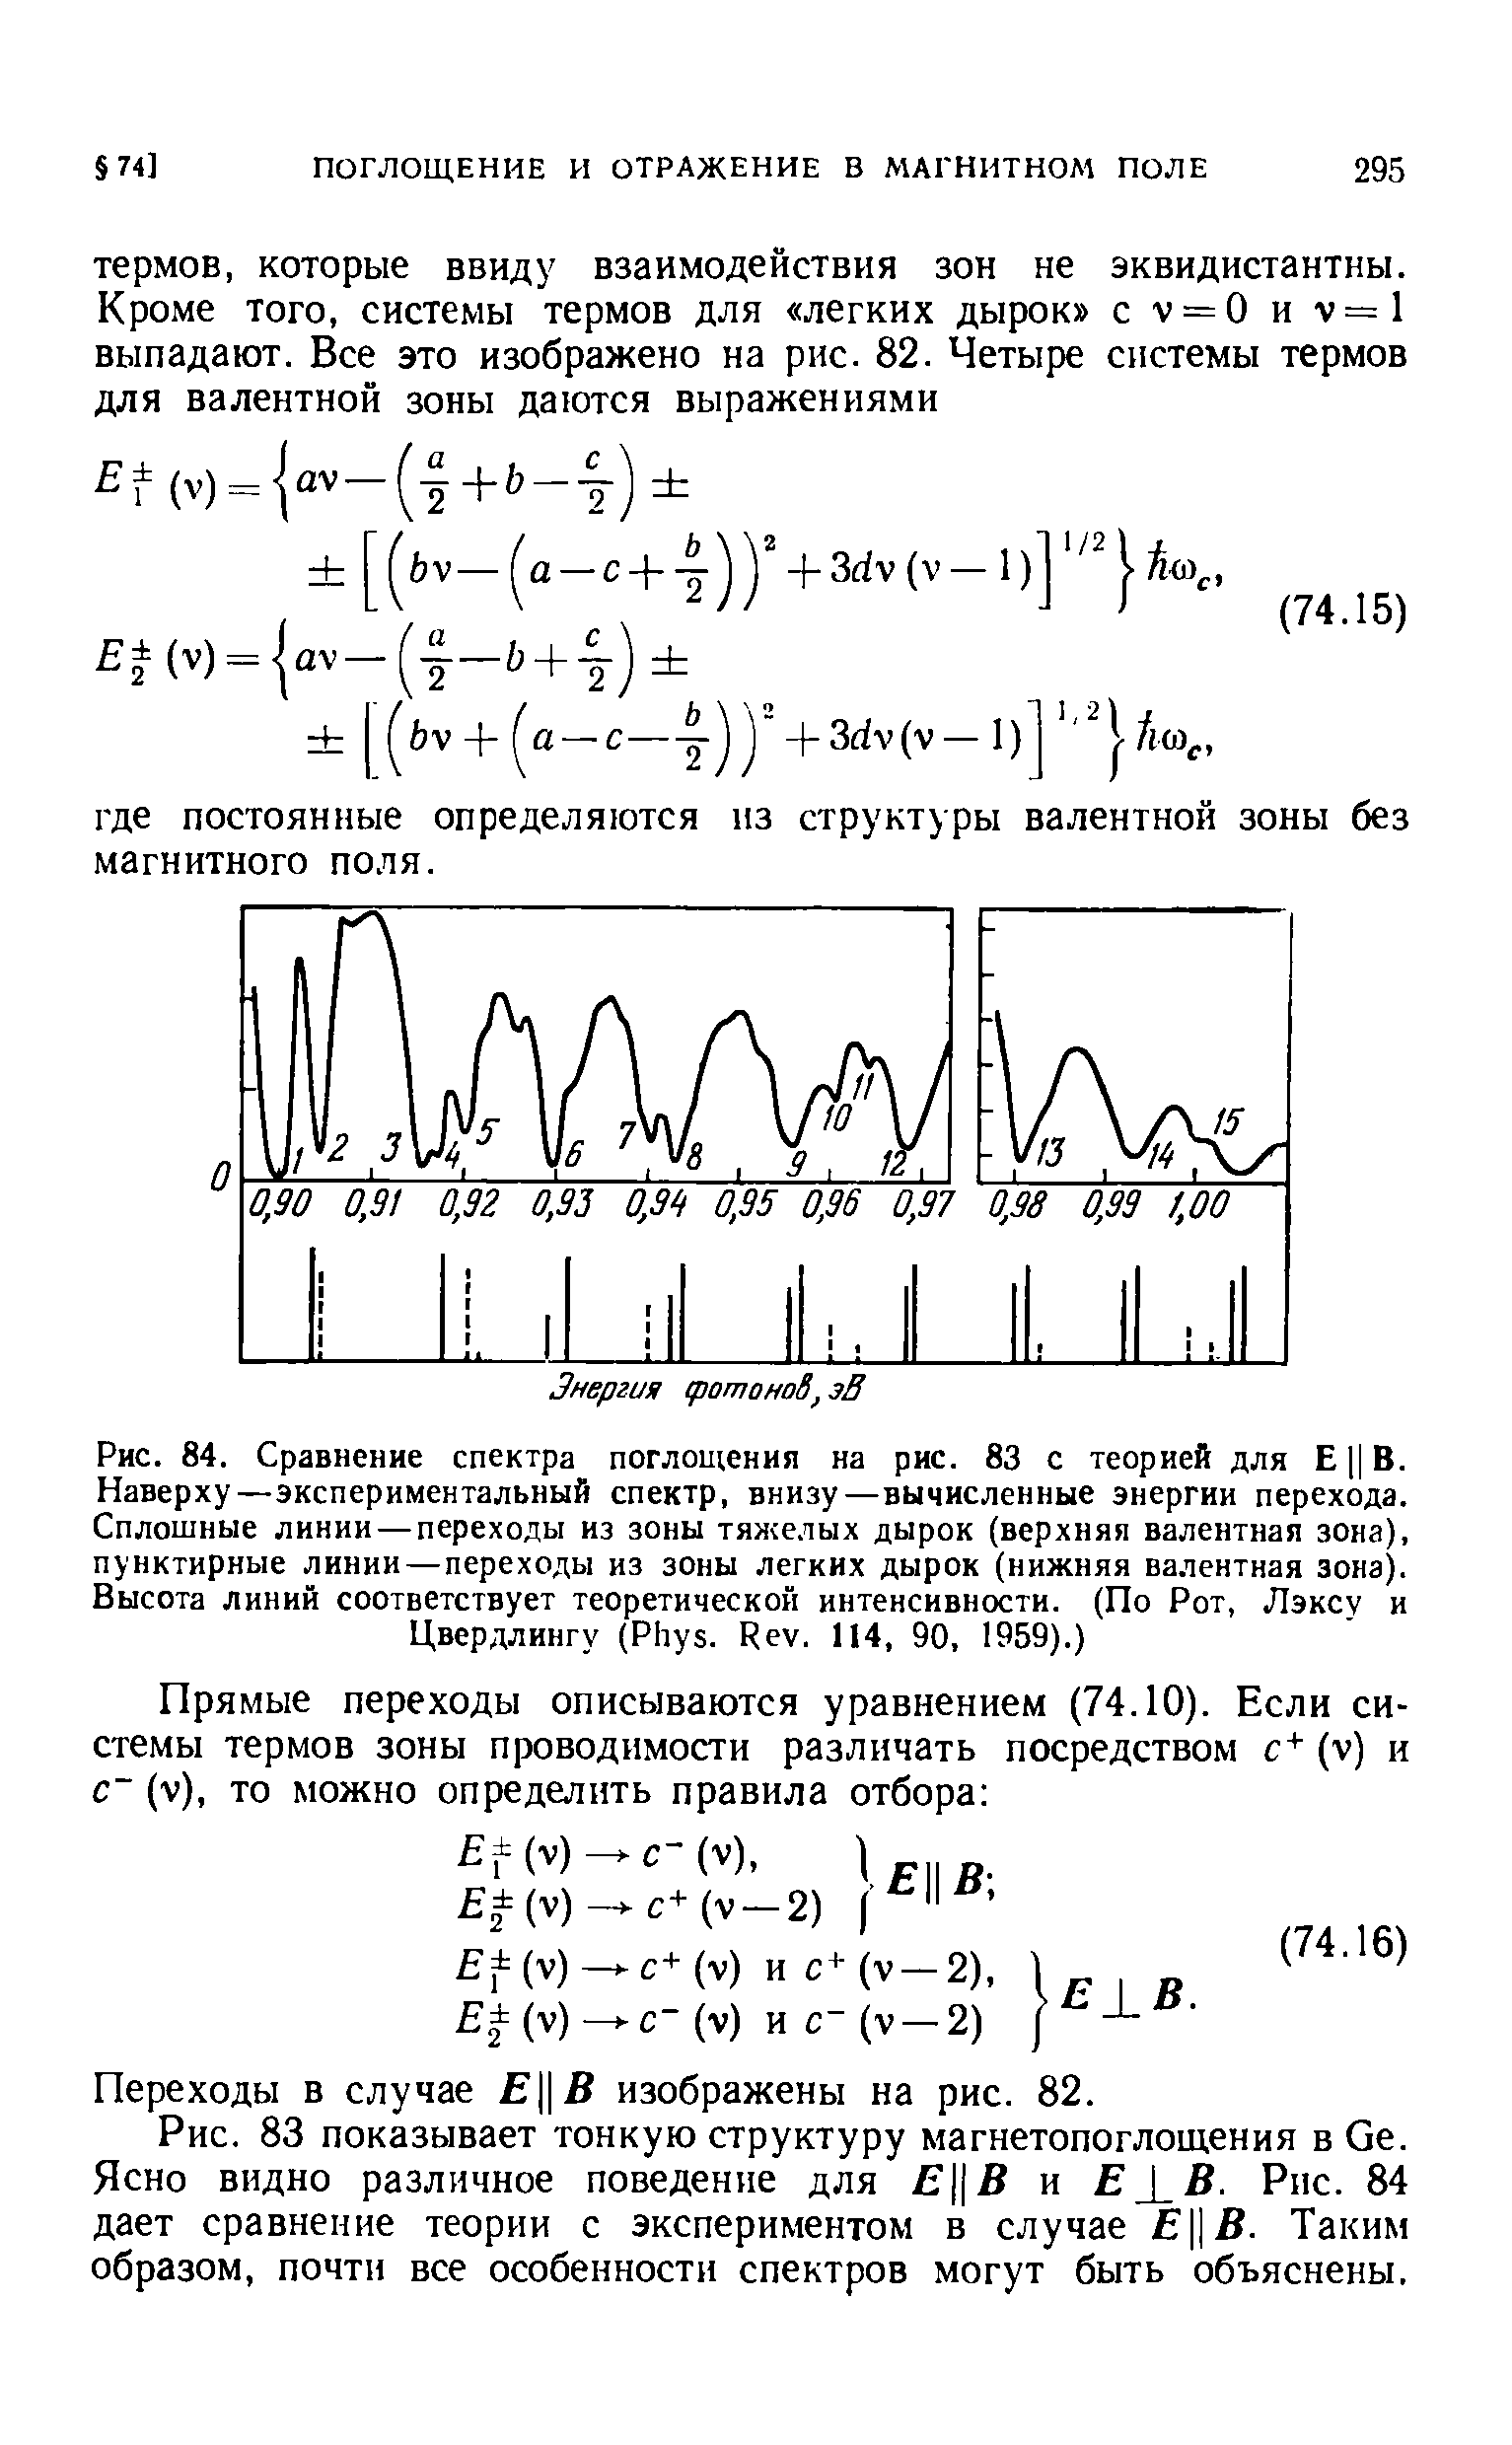 Рис. 84. Сравнение <a href="/info/16559">спектра поглощения</a> на рис. 83 с теорией для Е Ц В. Наверху—экспериментальный спектр, внизу—вычисленные <a href="/info/359168">энергии перехода</a>. <a href="/info/232485">Сплошные линии</a> — переходы из зоны тяжелых дырок (верхняя <a href="/info/16455">валентная зона</a>), пунктирные <a href="/info/1016">линии—переходы</a> из зоны легких дырок (нижняя <a href="/info/16455">валентная зона</a>). <a href="/info/545326">Высота линий</a> соответствует теоретической интенсивности. (По Рот, Лэксу и Цвердлингу (Phys. Rev. 114, 90, 1959).)
